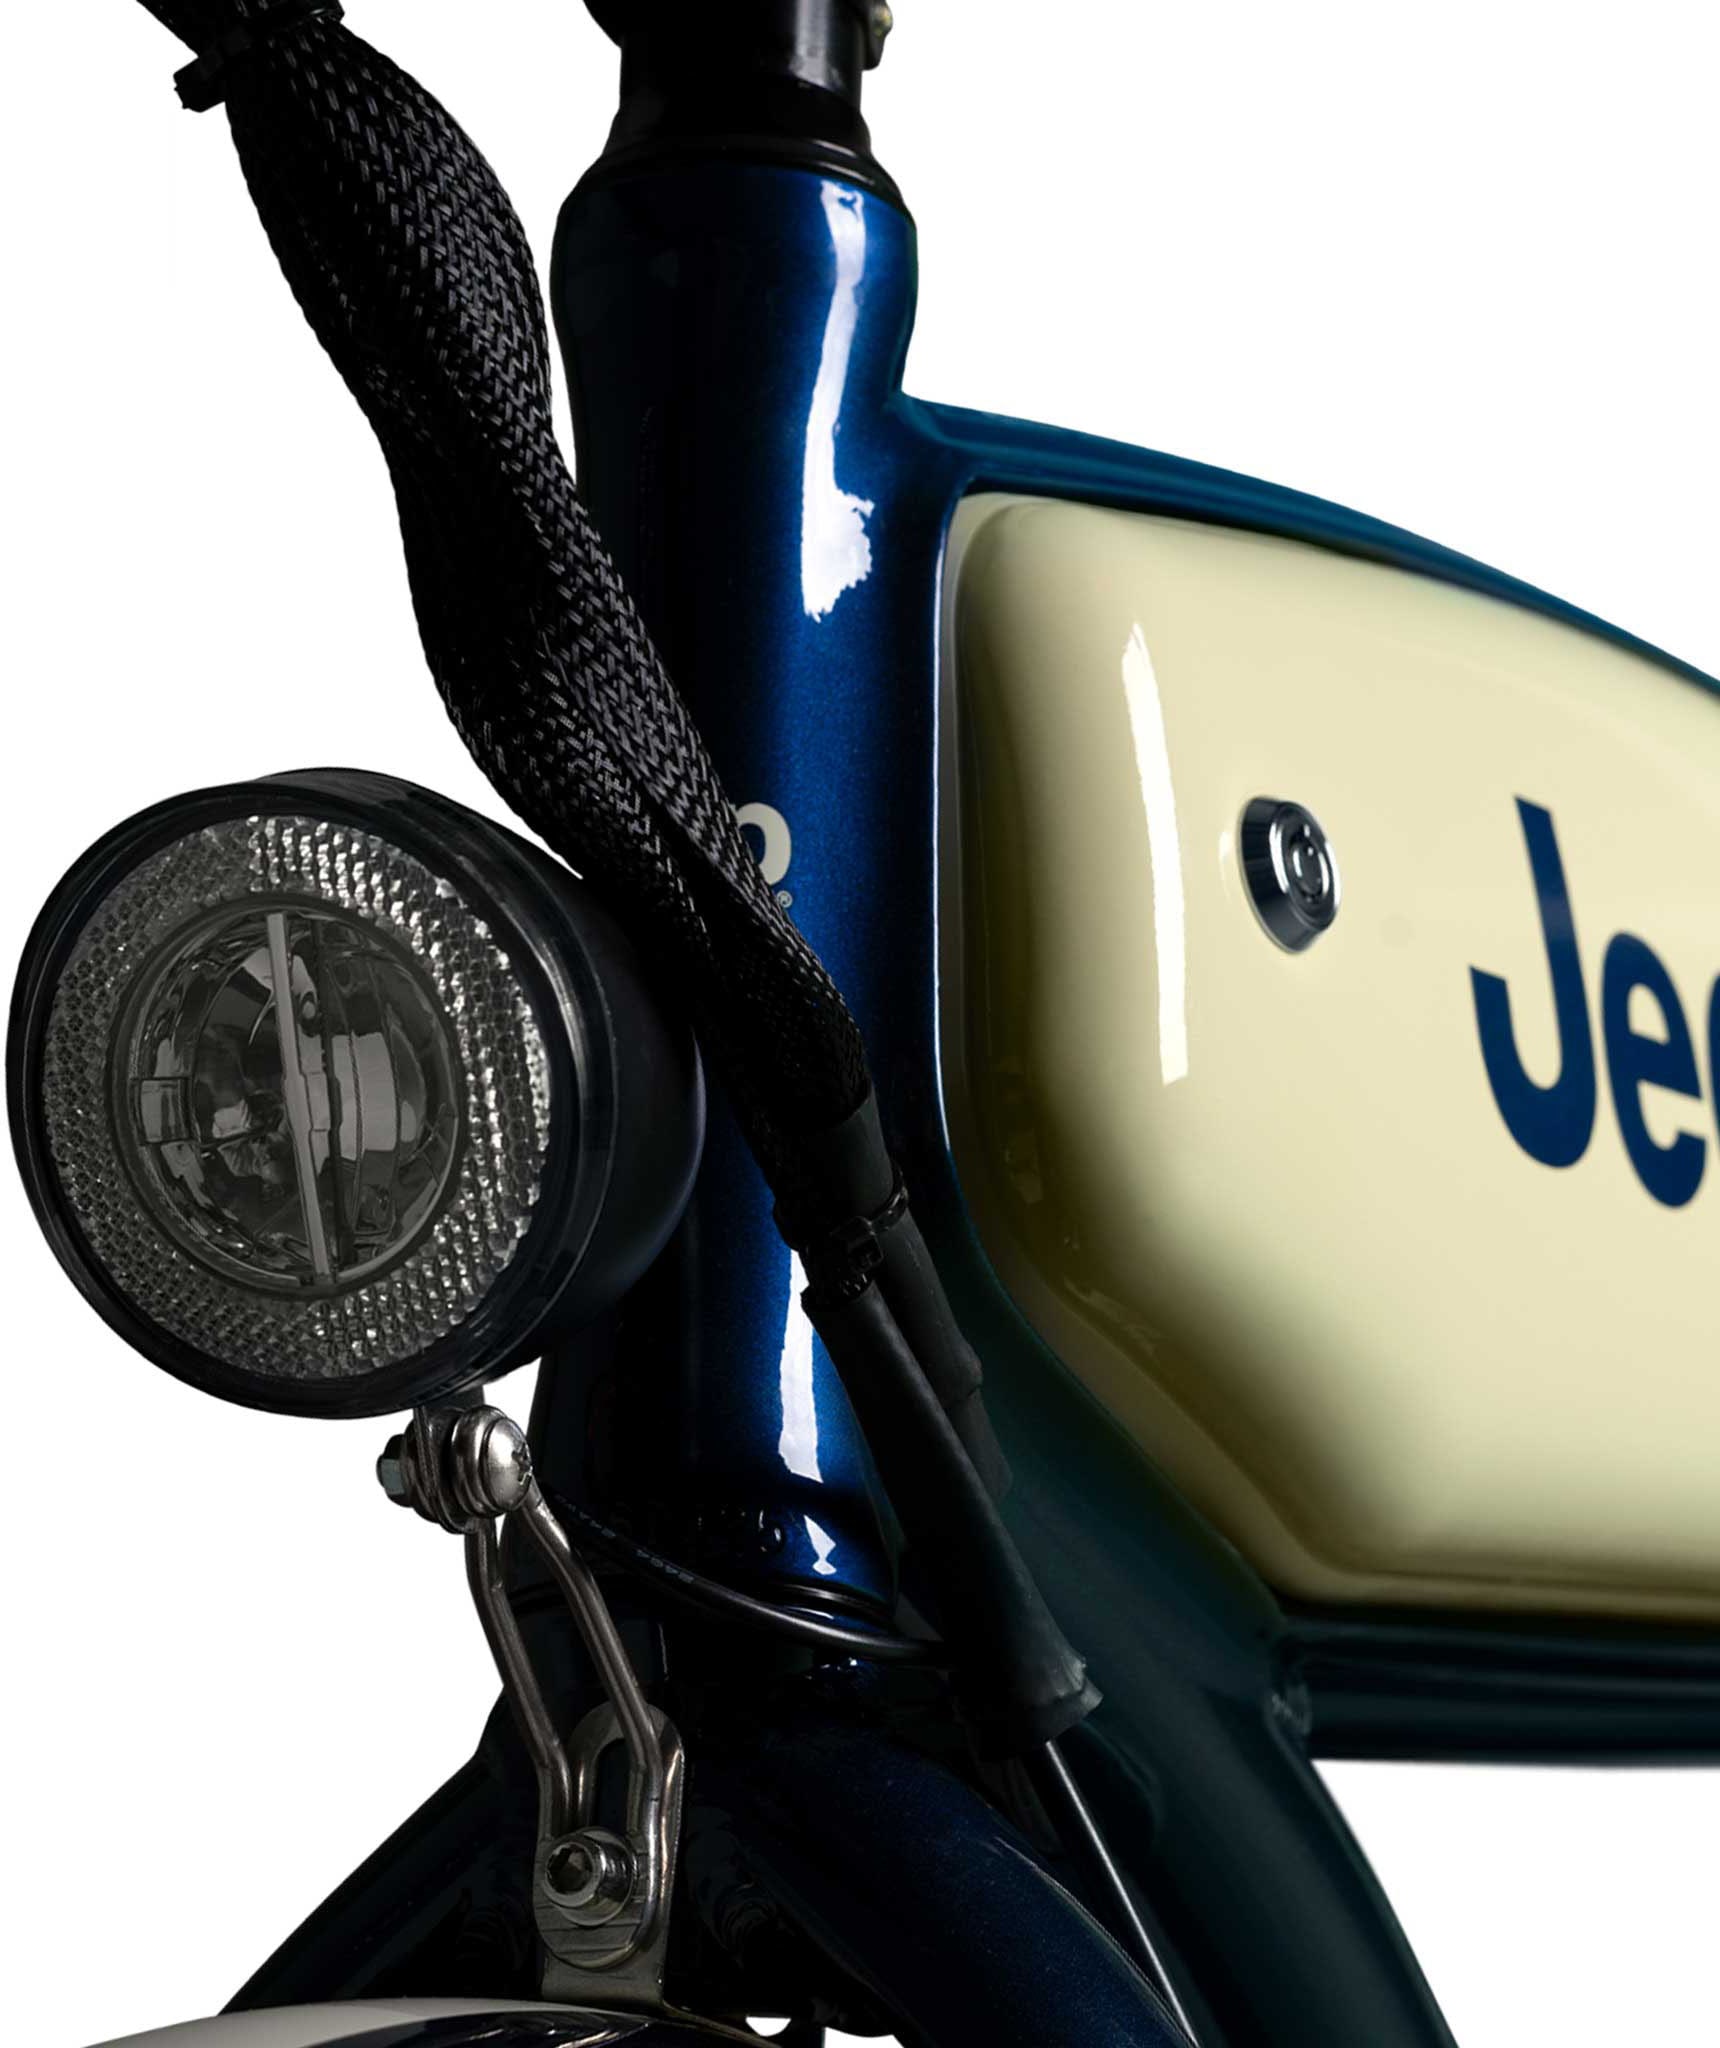 Jeep E-Bikes E-Bike »CR 7005«, 7 Gang, Heckmotor 250 W, (mit Akku-Ladegerät), Pedelec